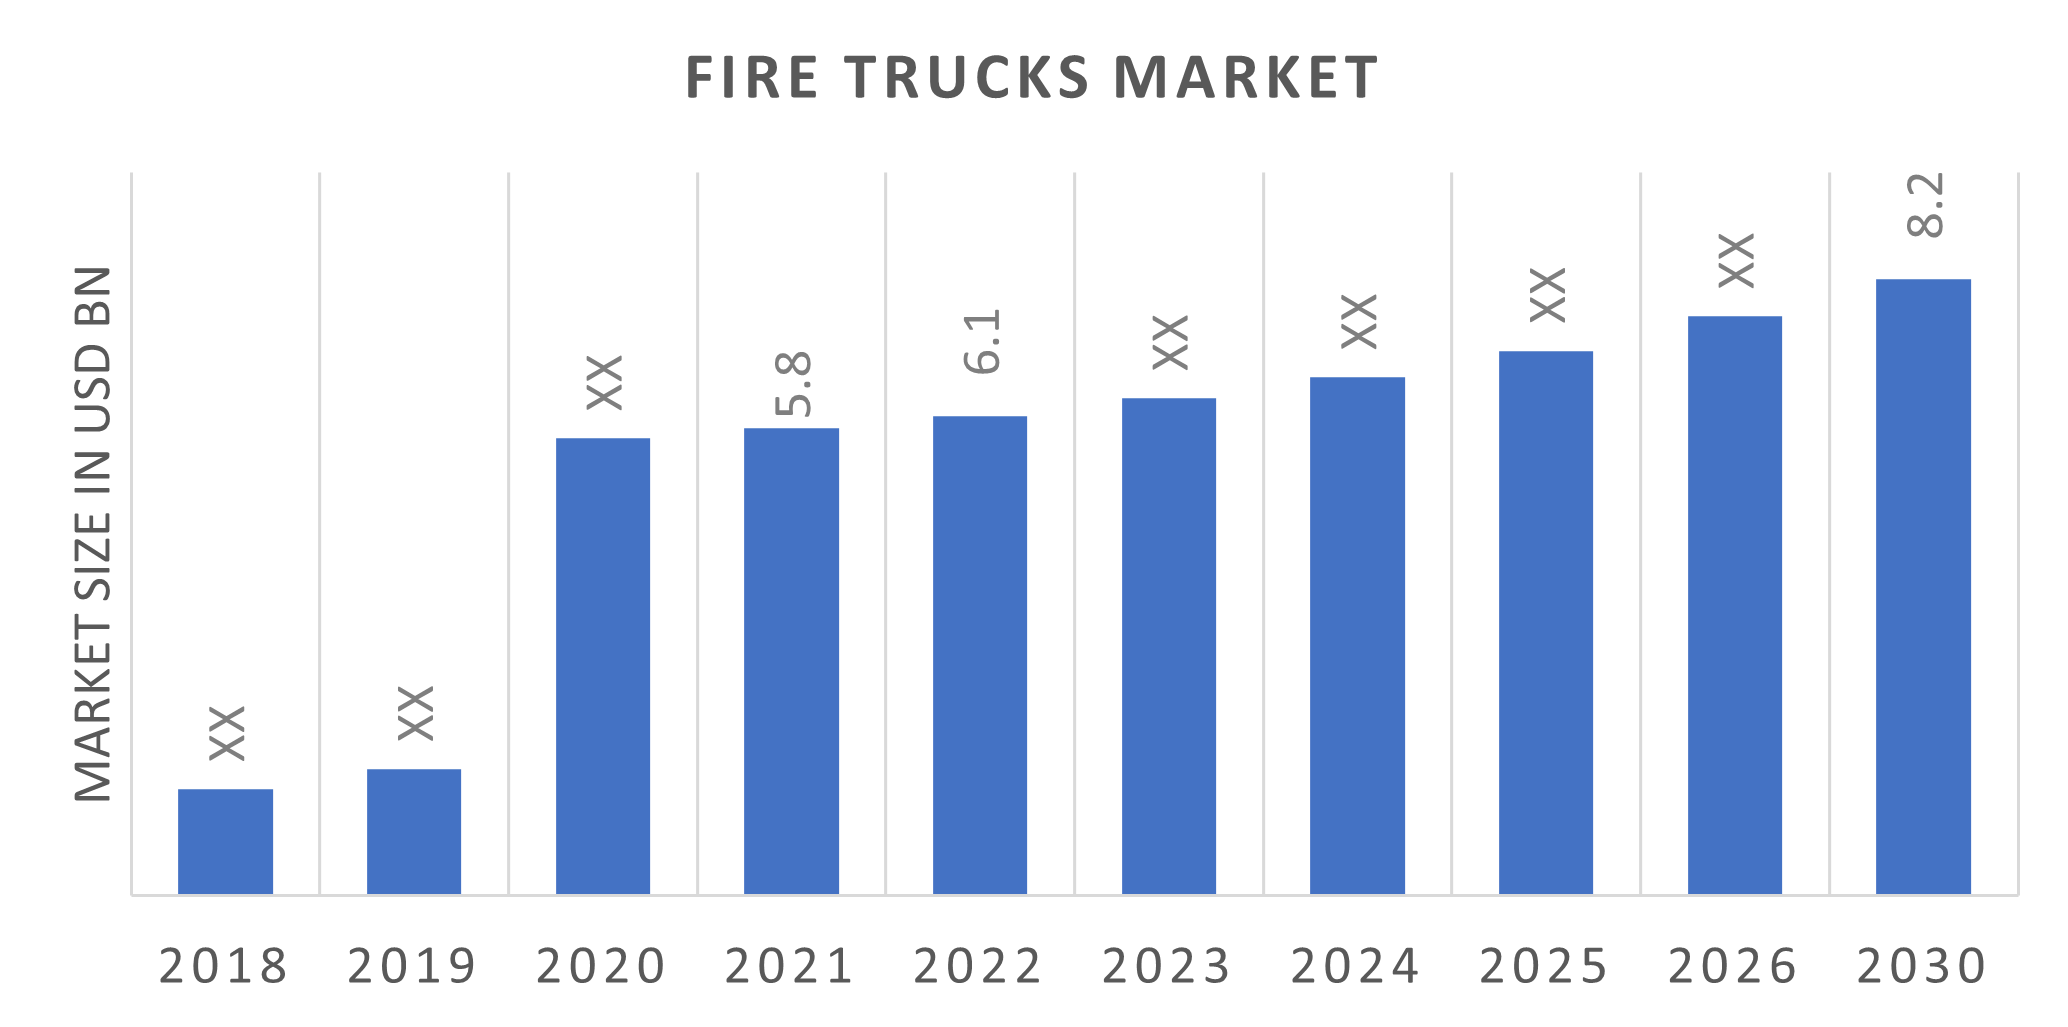 Fire Trucks Market Overview